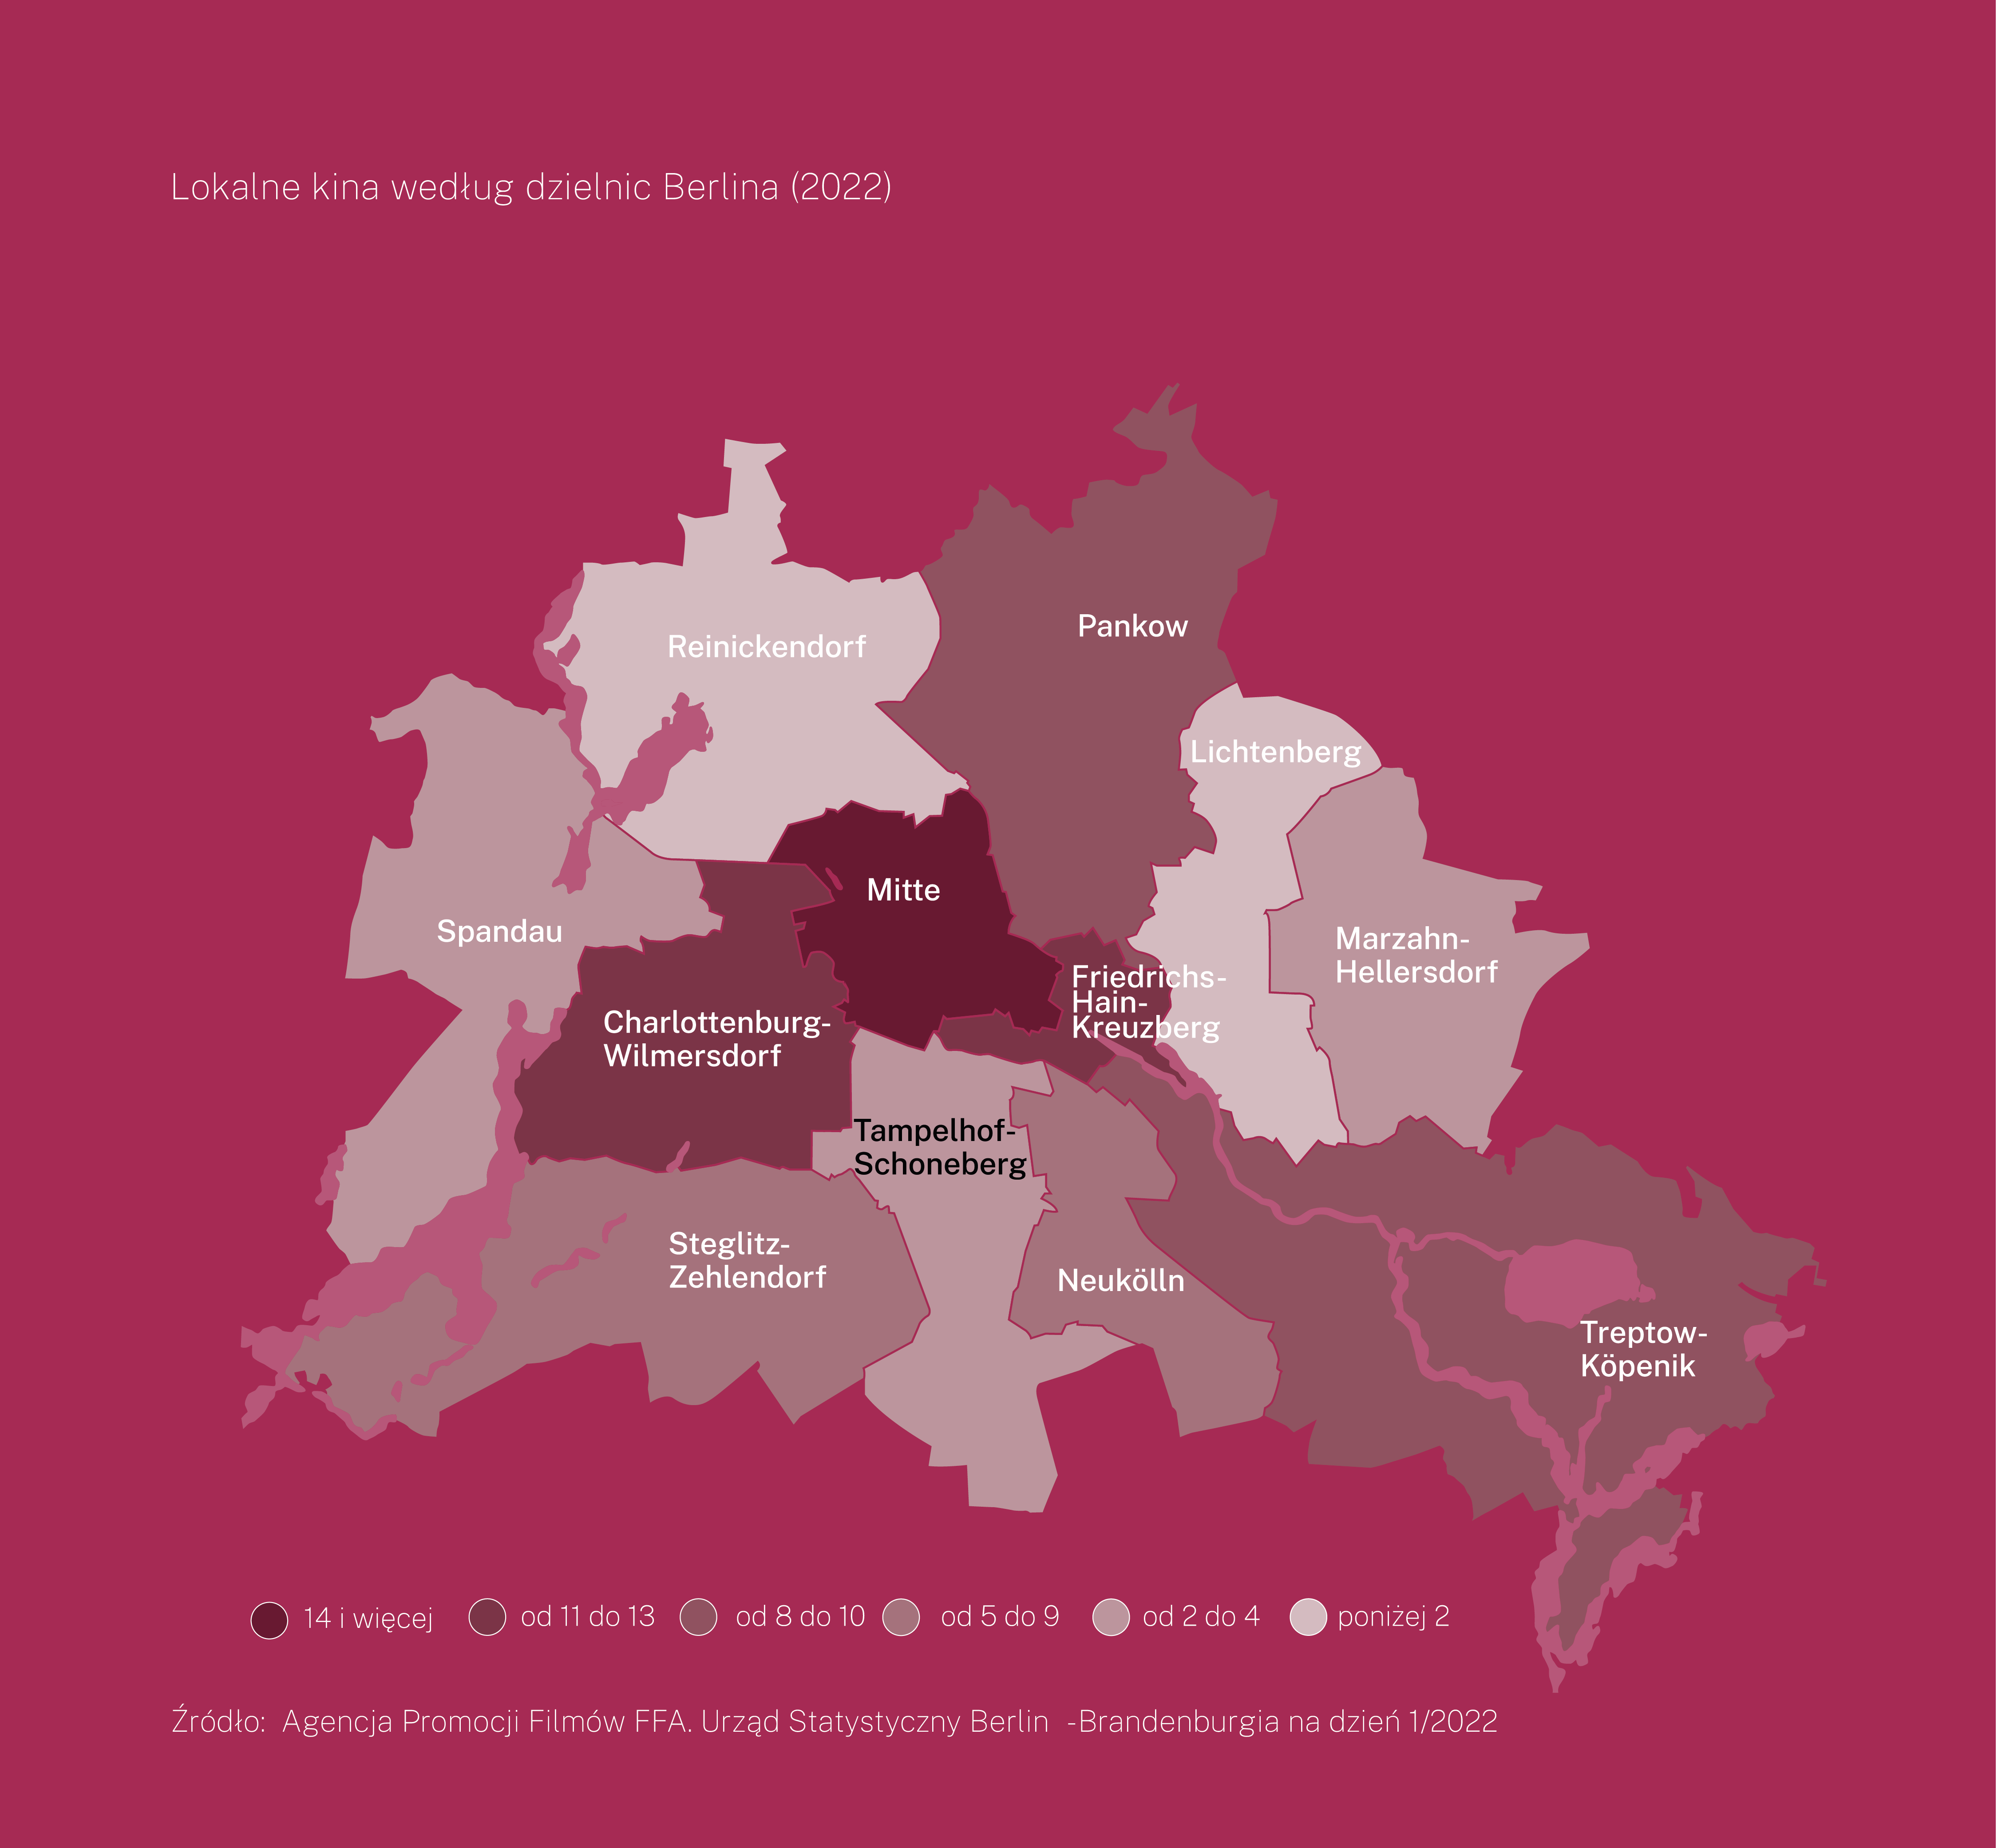 Mapa Berlina z podziałem na dzielnice. Na mapie wskazano liczbę lokalnych kin w każdej z dzielnic. Najwięcej (14 i więcej) kin jest w dzielnicy Mitte. 